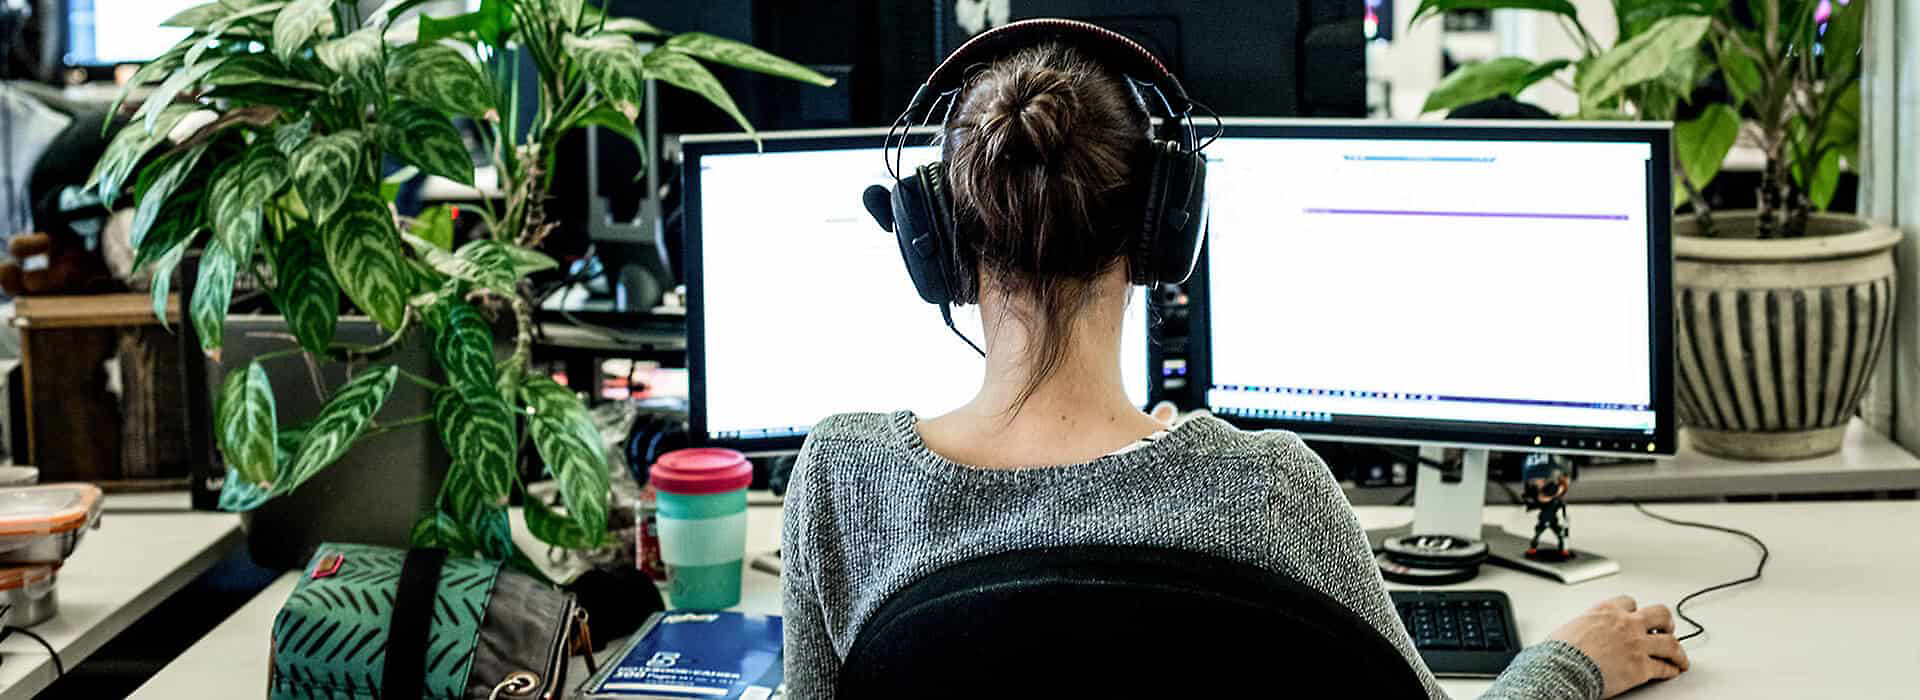 Egy fülre helyezhető fejhallgatót viselő, az íróasztalánál dolgozó személy 